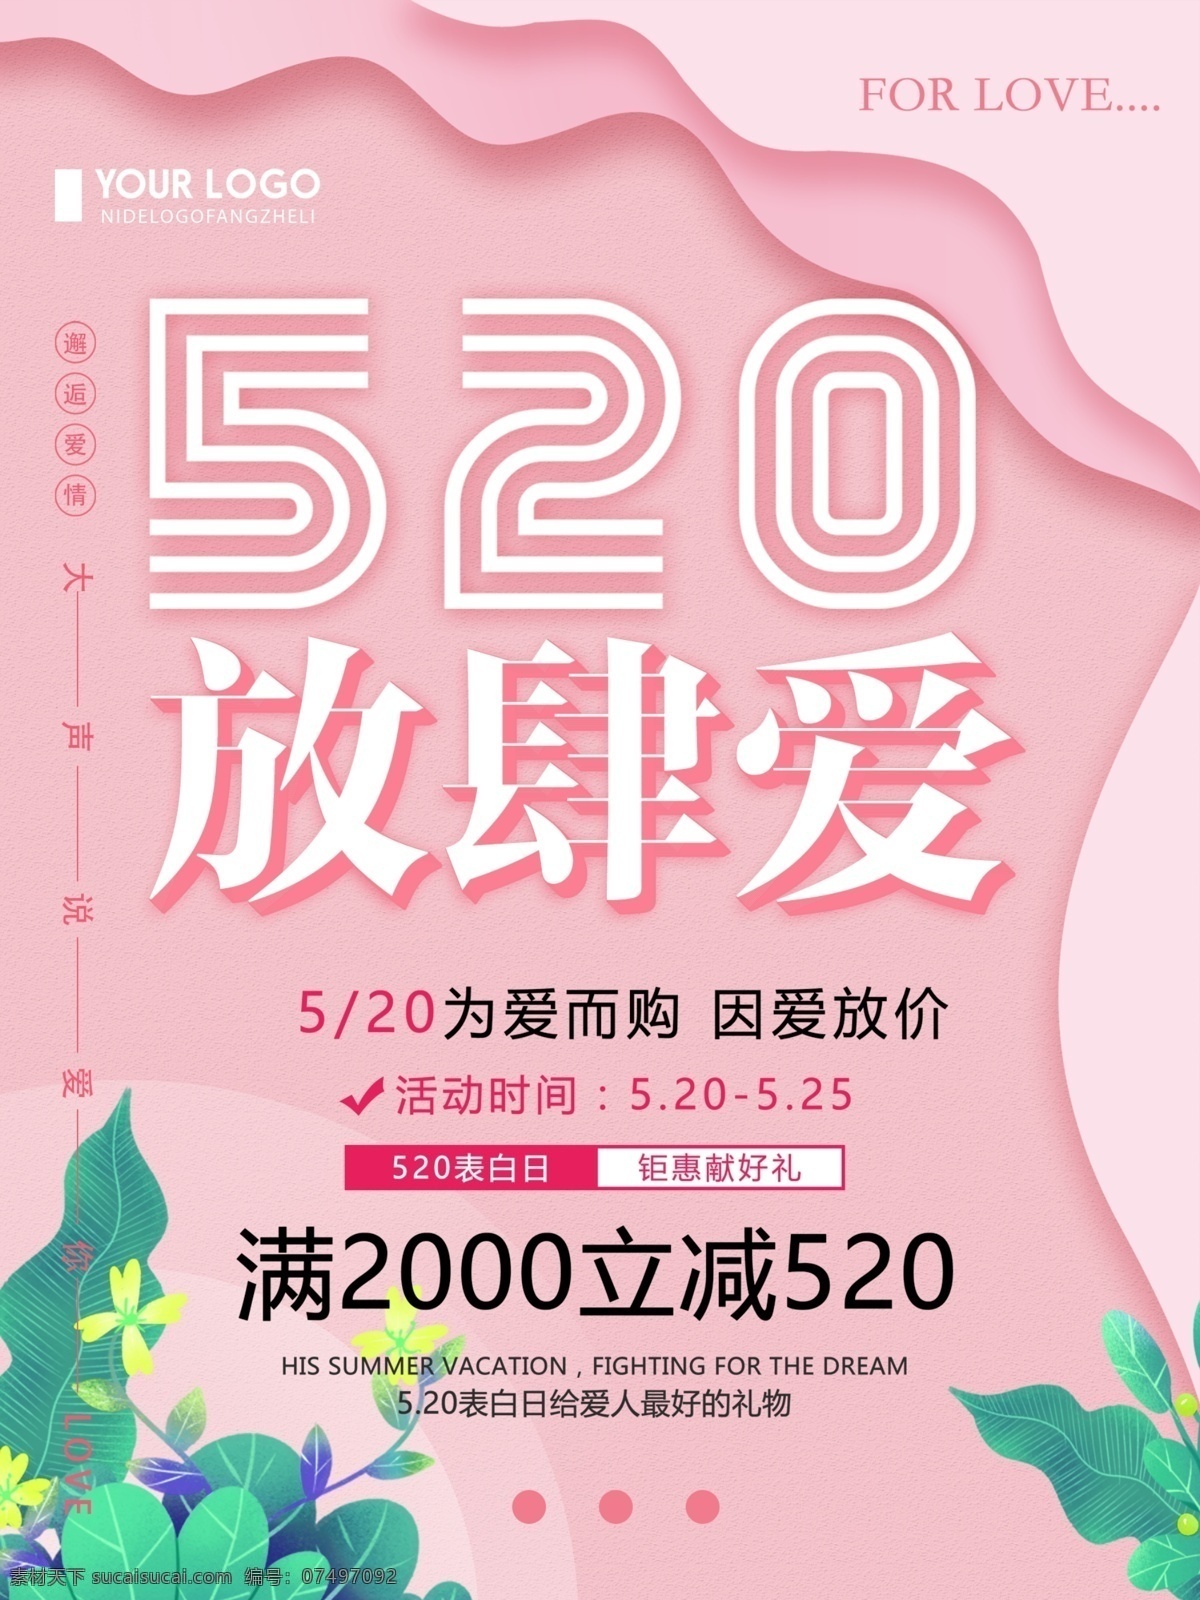 粉色 清新 简约 520 放肆 爱 情人节 海报 520放肆爱 情人节海报 宣传海报 促销